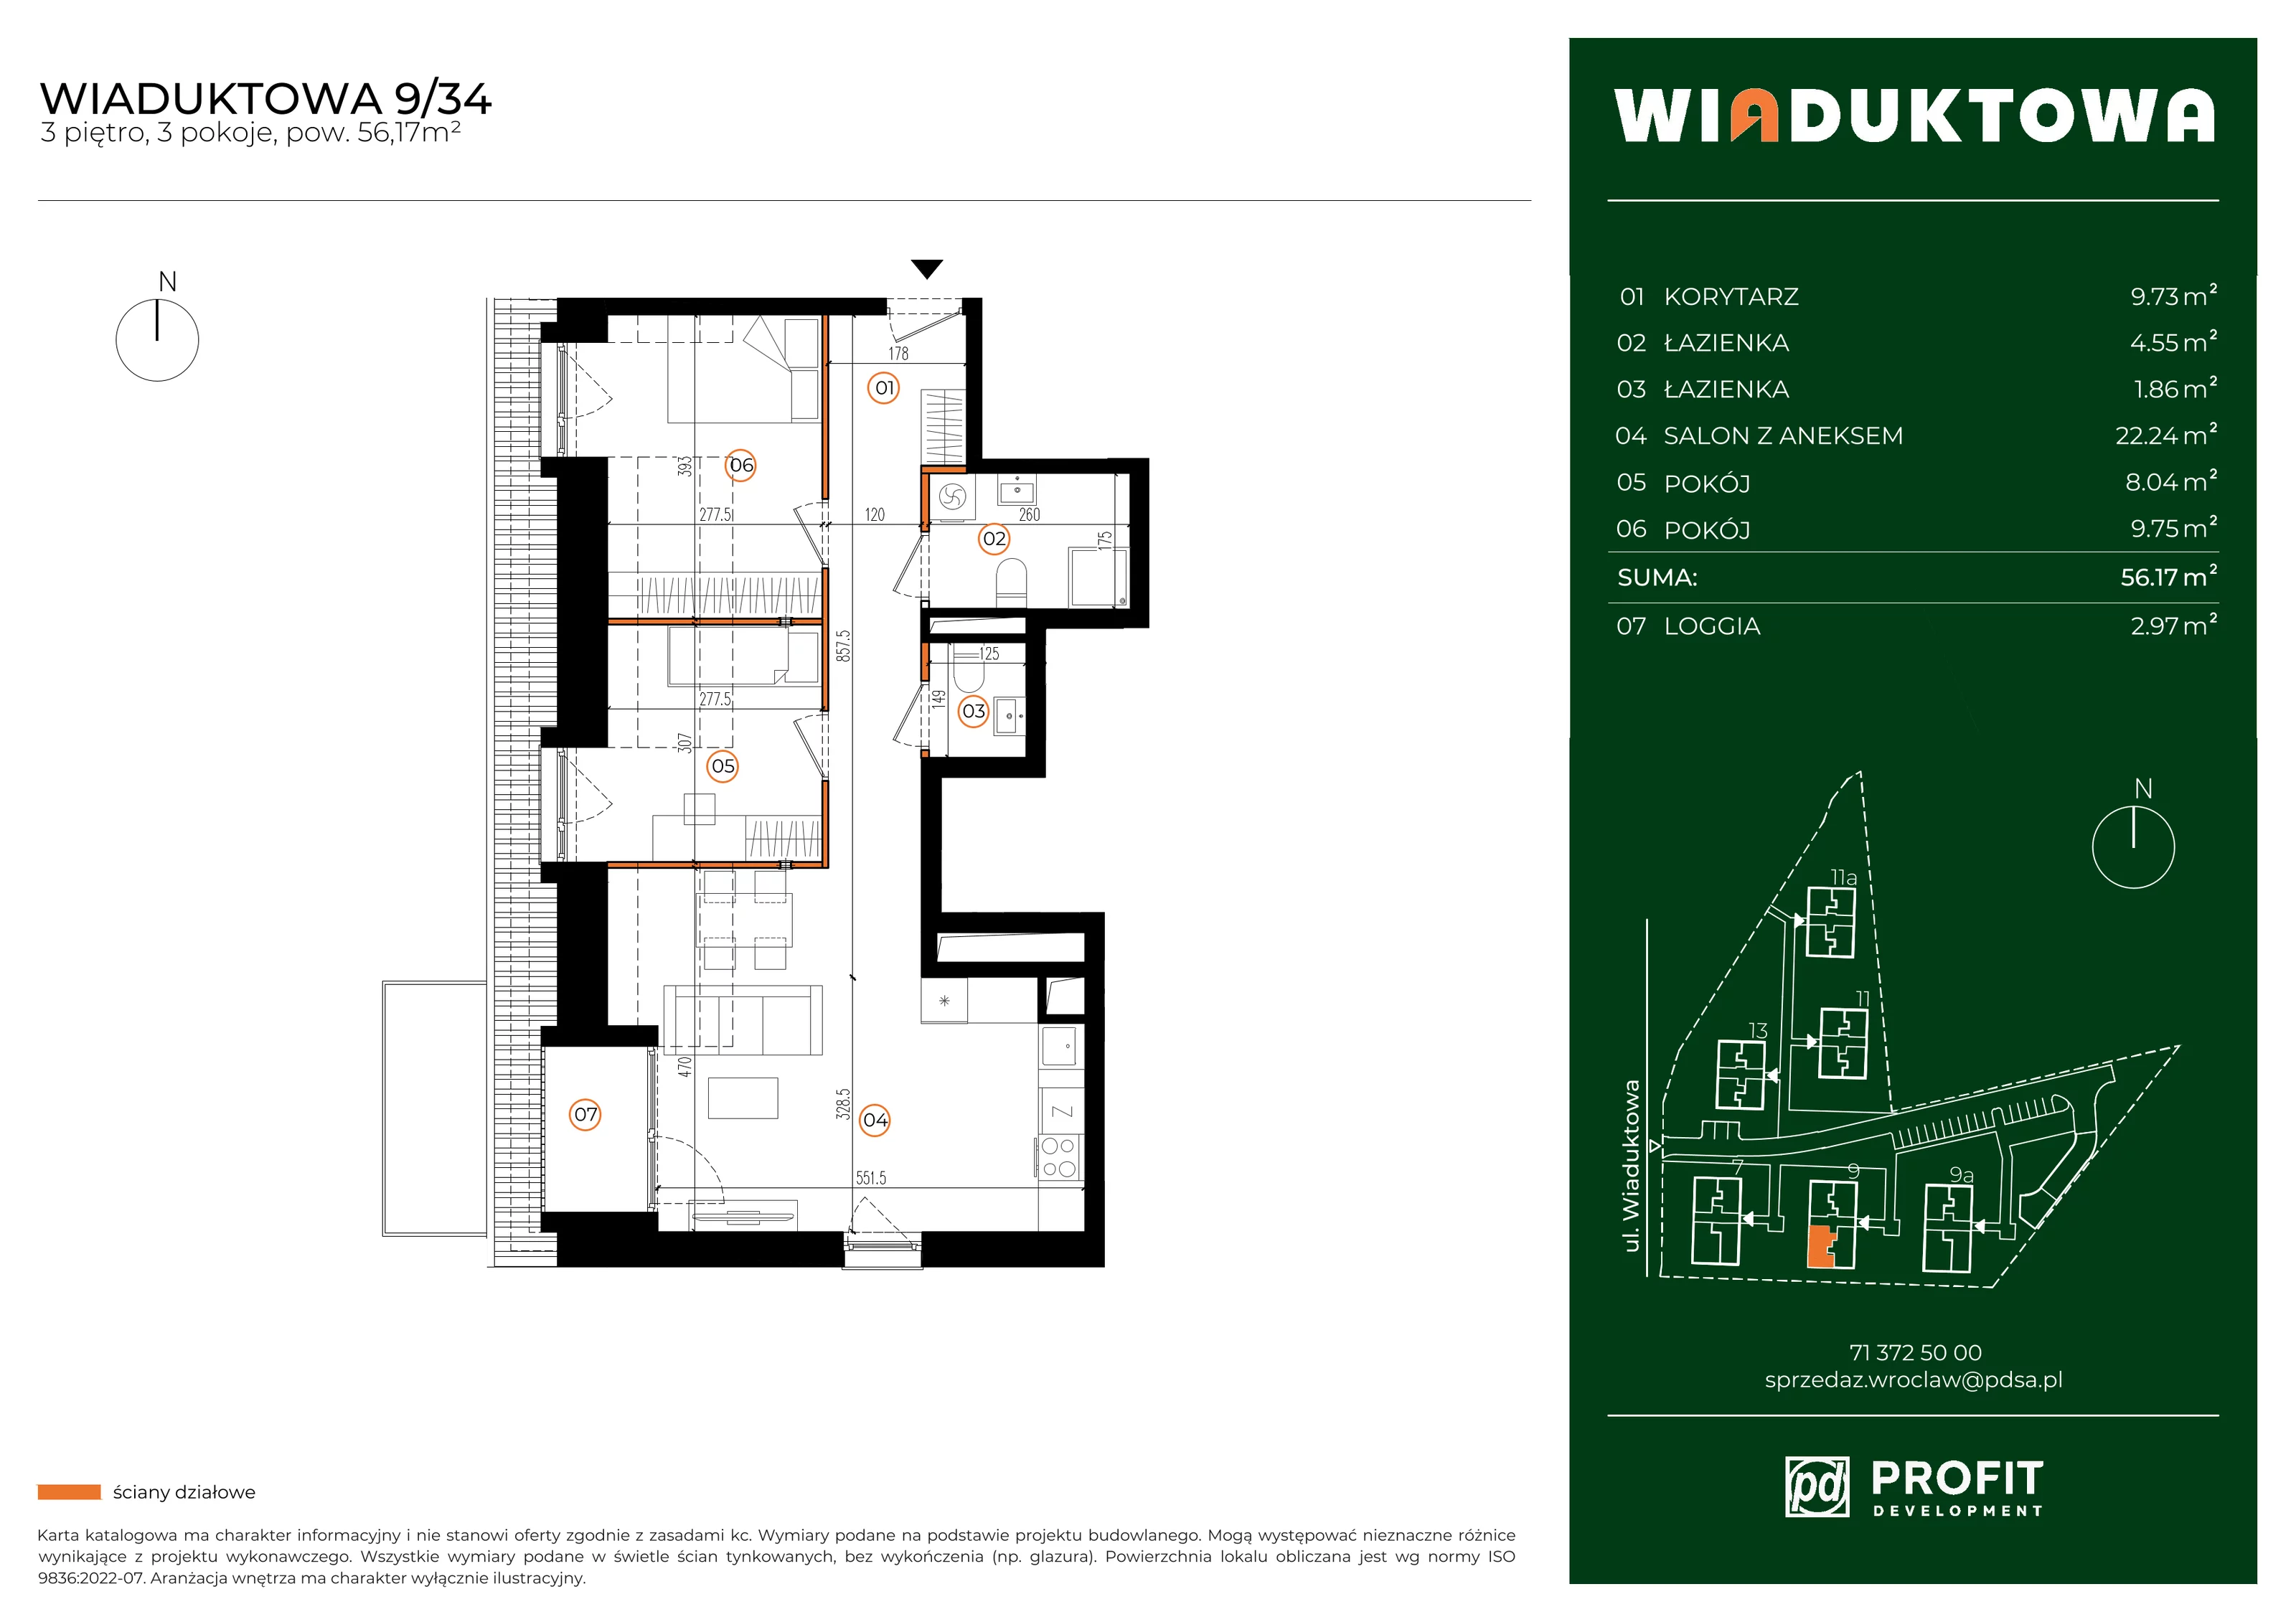 Mieszkanie 56,17 m², piętro 3, oferta nr WI/9/34, Wiaduktowa, Wrocław, Krzyki-Partynice, Krzyki, ul. Wiaduktowa